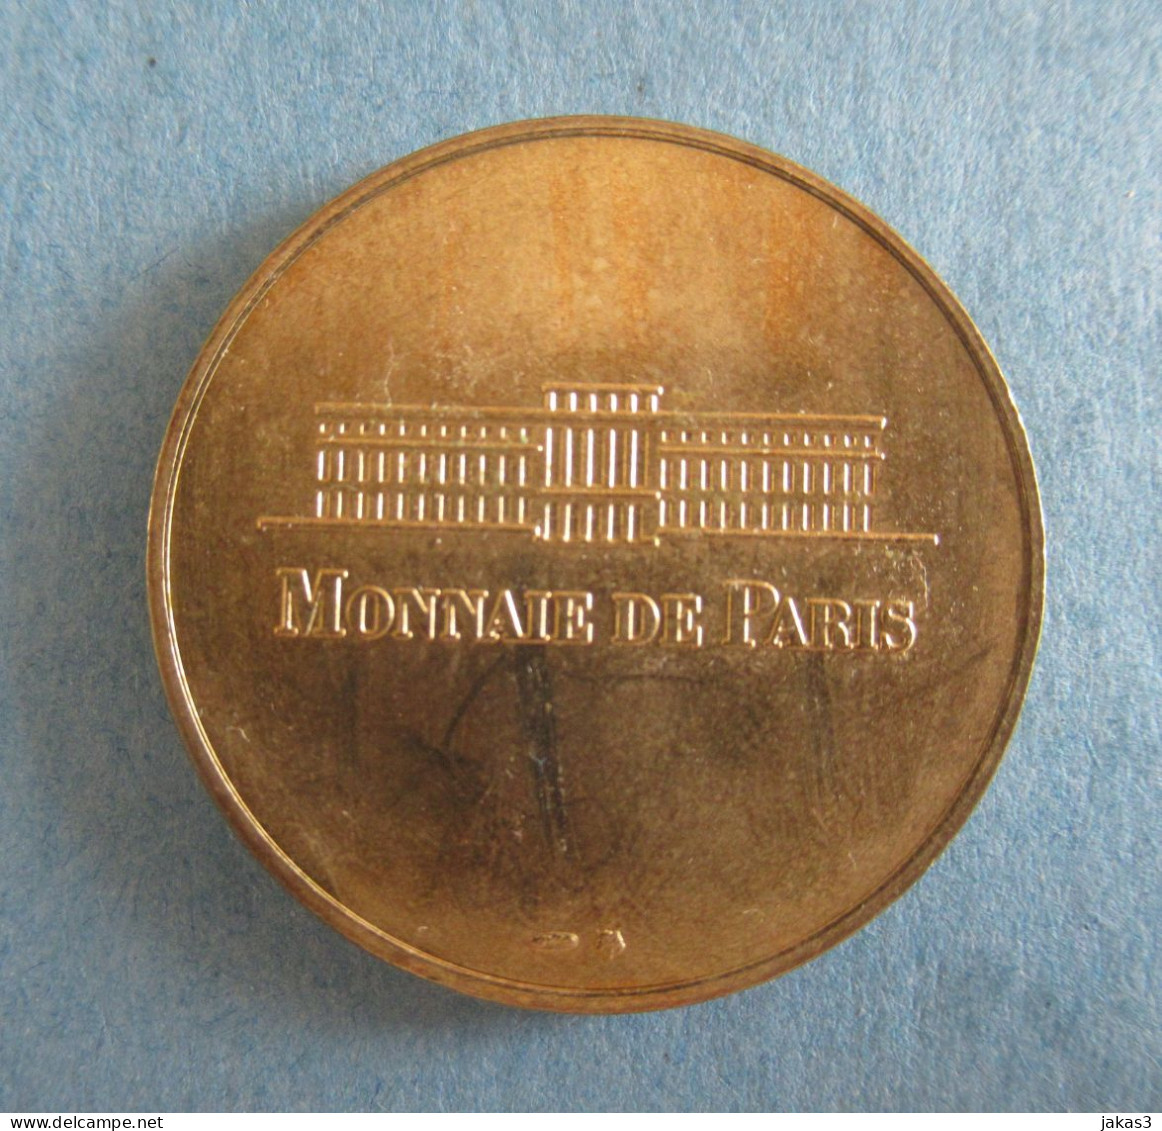 MONNAIE DE PARIS -  MÉDAILLE SOUVENIR -  CHATEAU ROYAL DE BLOIS-  NON DATÉ - ANNÉE  1998 - Ohne Datum